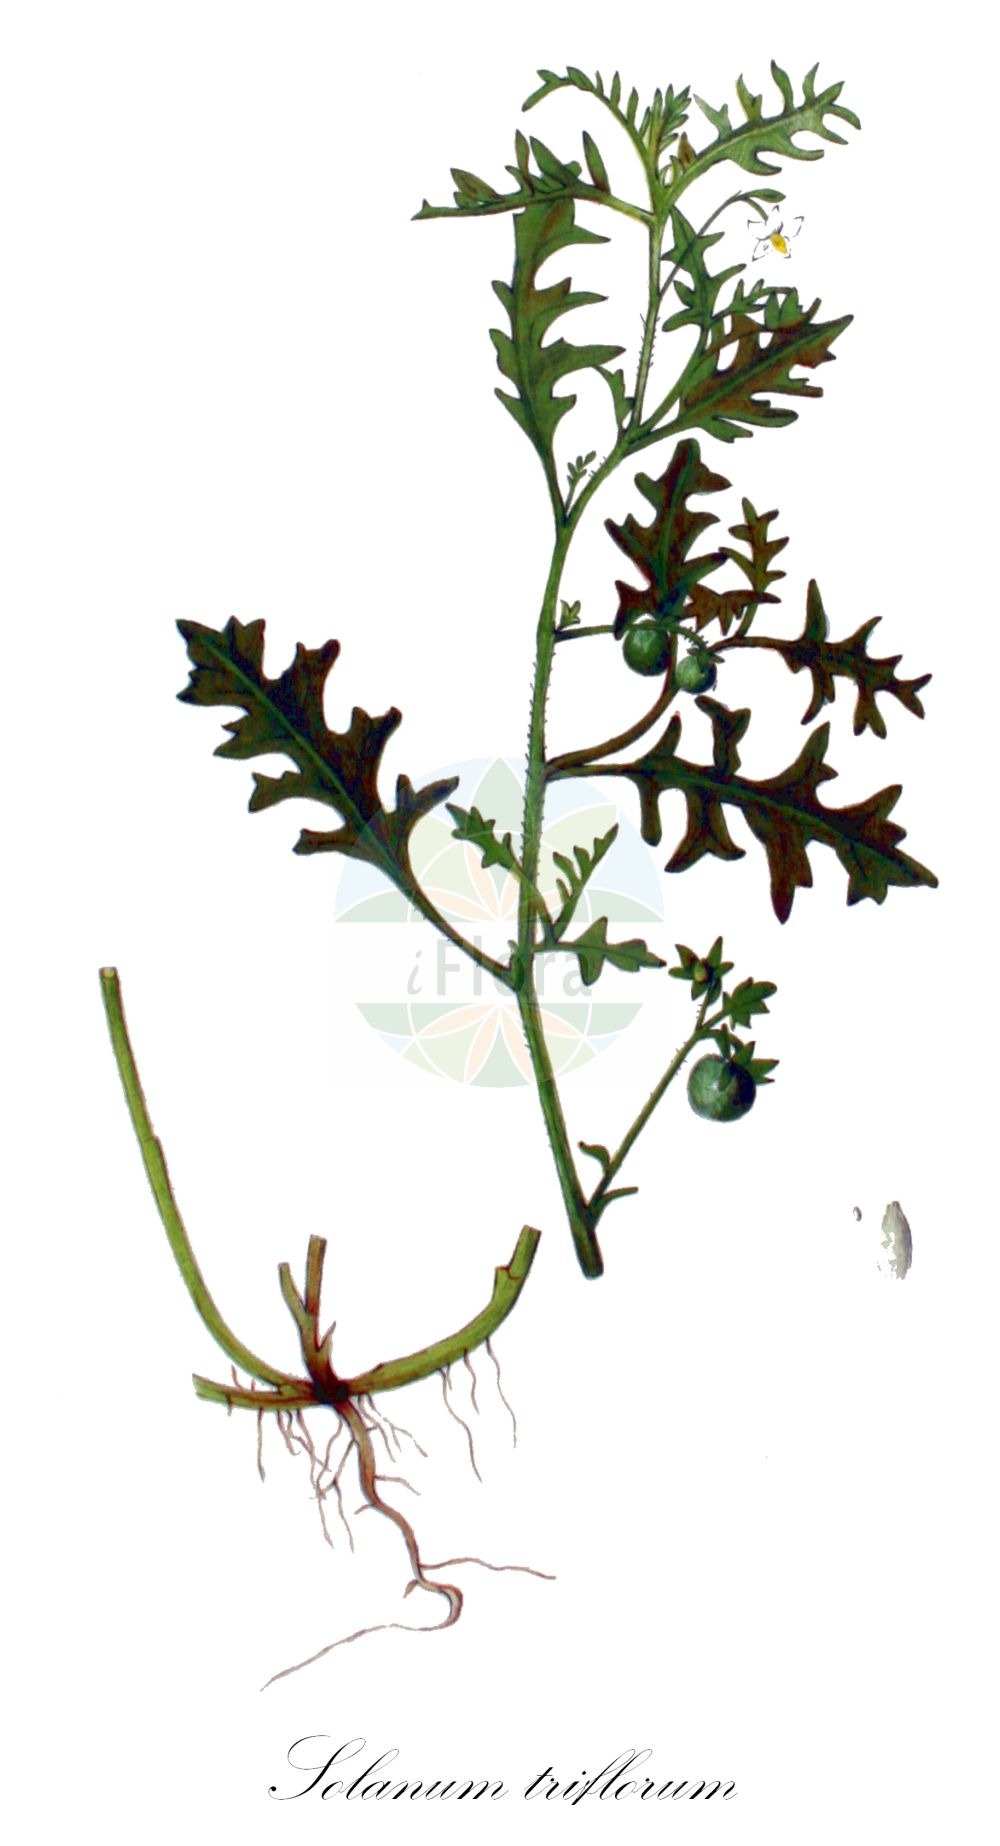 Historische Abbildung von Solanum triflorum (Dreiblütiger Nachtschatten - Cutleaf Nightshade). Das Bild zeigt Blatt, Bluete, Frucht und Same. ---- Historical Drawing of Solanum triflorum (Dreiblütiger Nachtschatten - Cutleaf Nightshade). The image is showing leaf, flower, fruit and seed.(Solanum triflorum,Dreiblütiger Nachtschatten,Cutleaf Nightshade,Solanum triflorum,Solanum triflorum var. ponticum,Dreibluetiger Nachtschatten,Cutleaf Nightshade,Three-flower Nightshade,Solanum,Nachtschatten,Bindweed,Solanaceae,Nachtschattengewächse,Potato family,Blatt,Bluete,Frucht,Same,leaf,flower,fruit,seed,Kops (1800-1934))